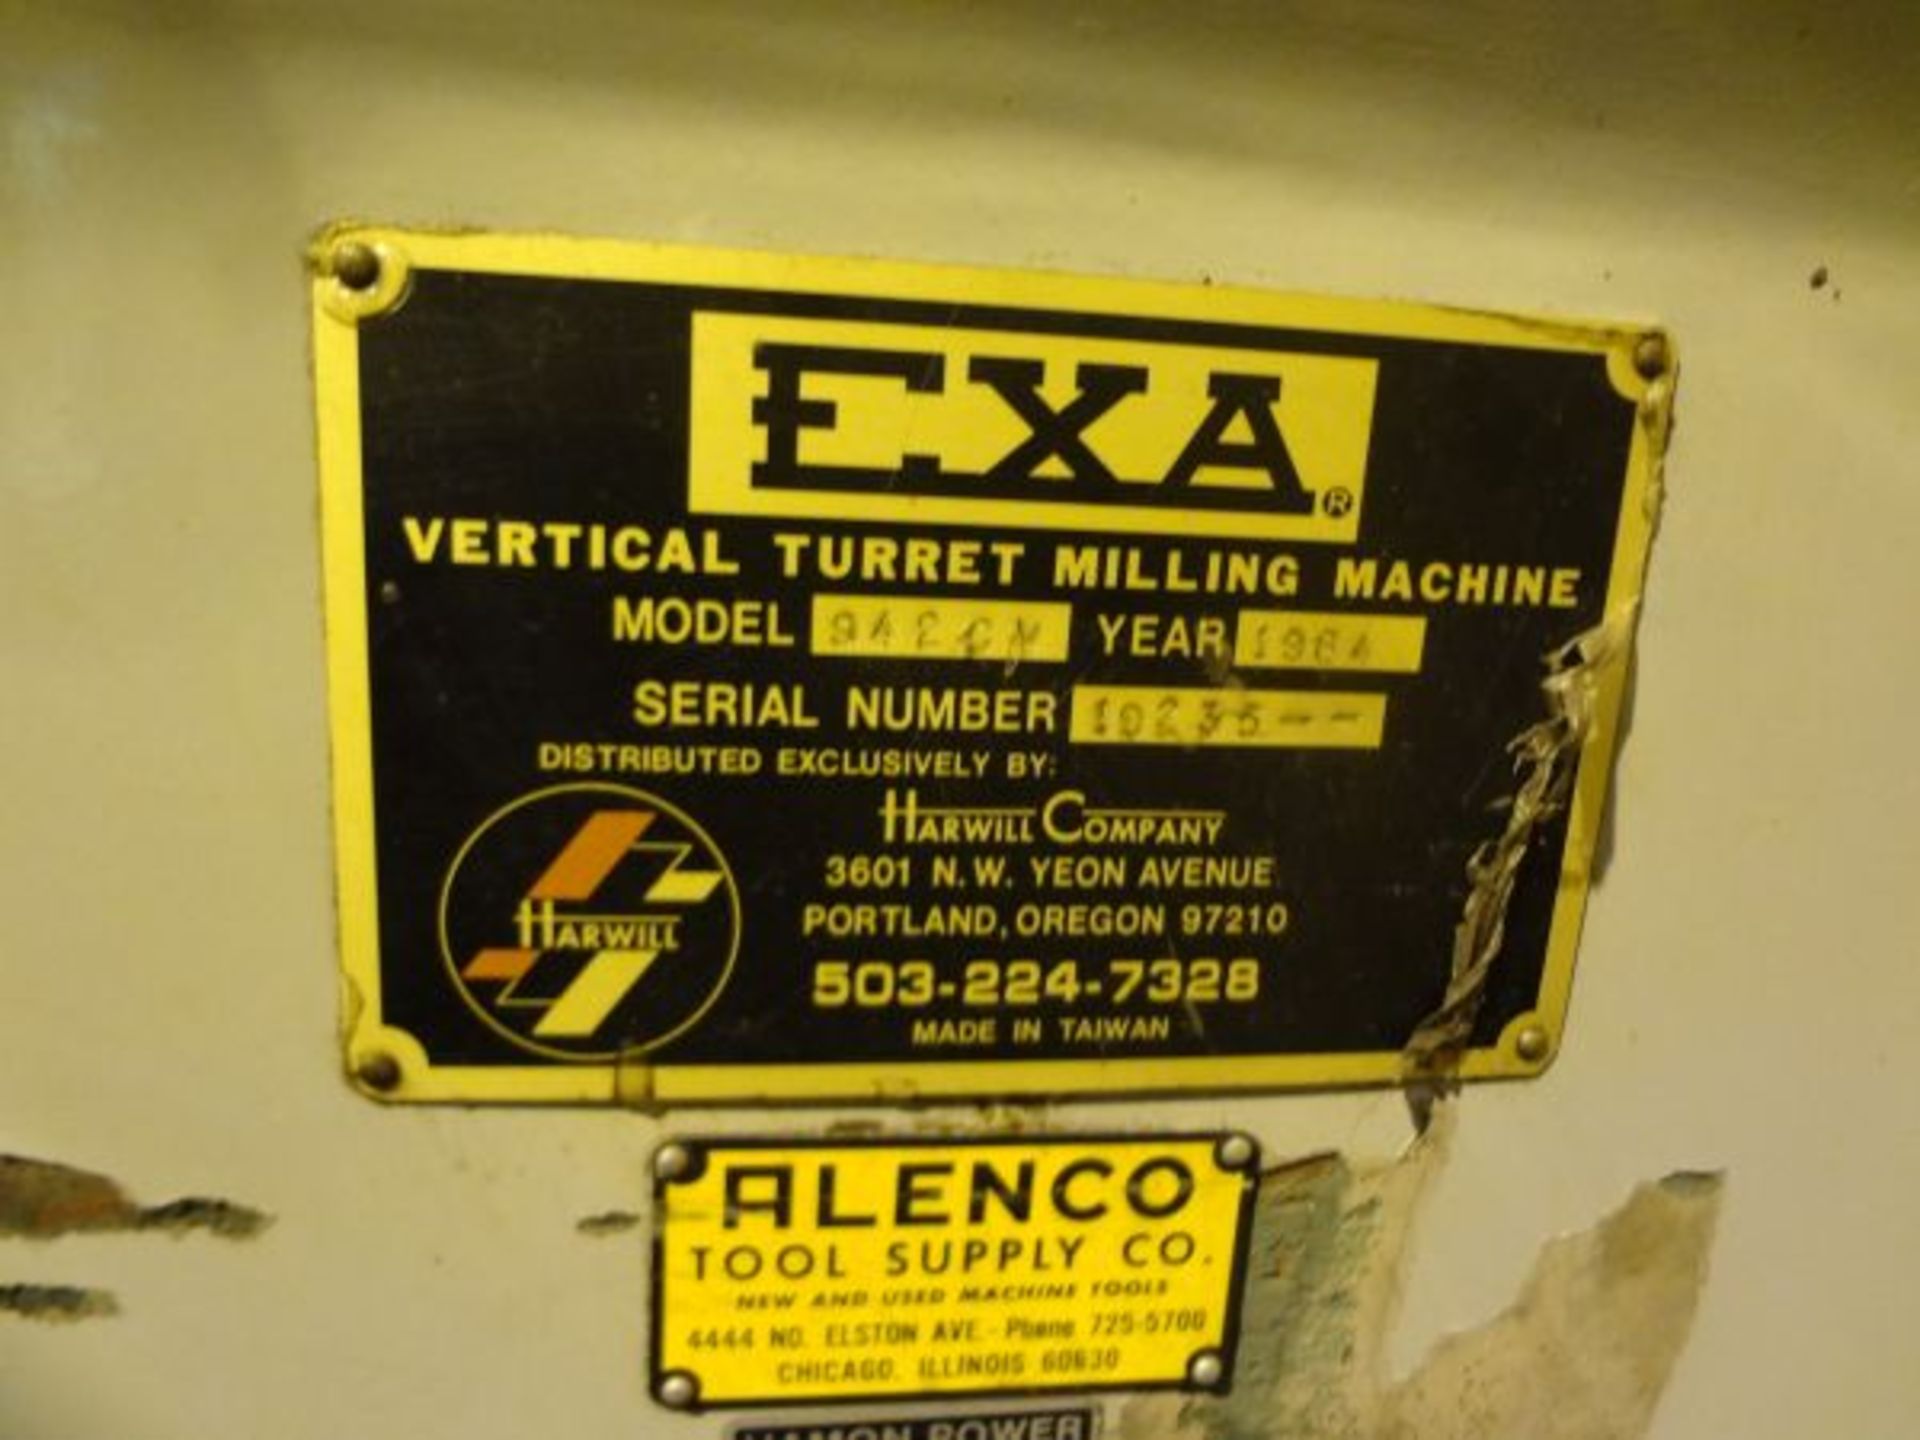 3 HP EXA VERTICAL MILLING MACHINE; S/N 19235 - Image 3 of 4